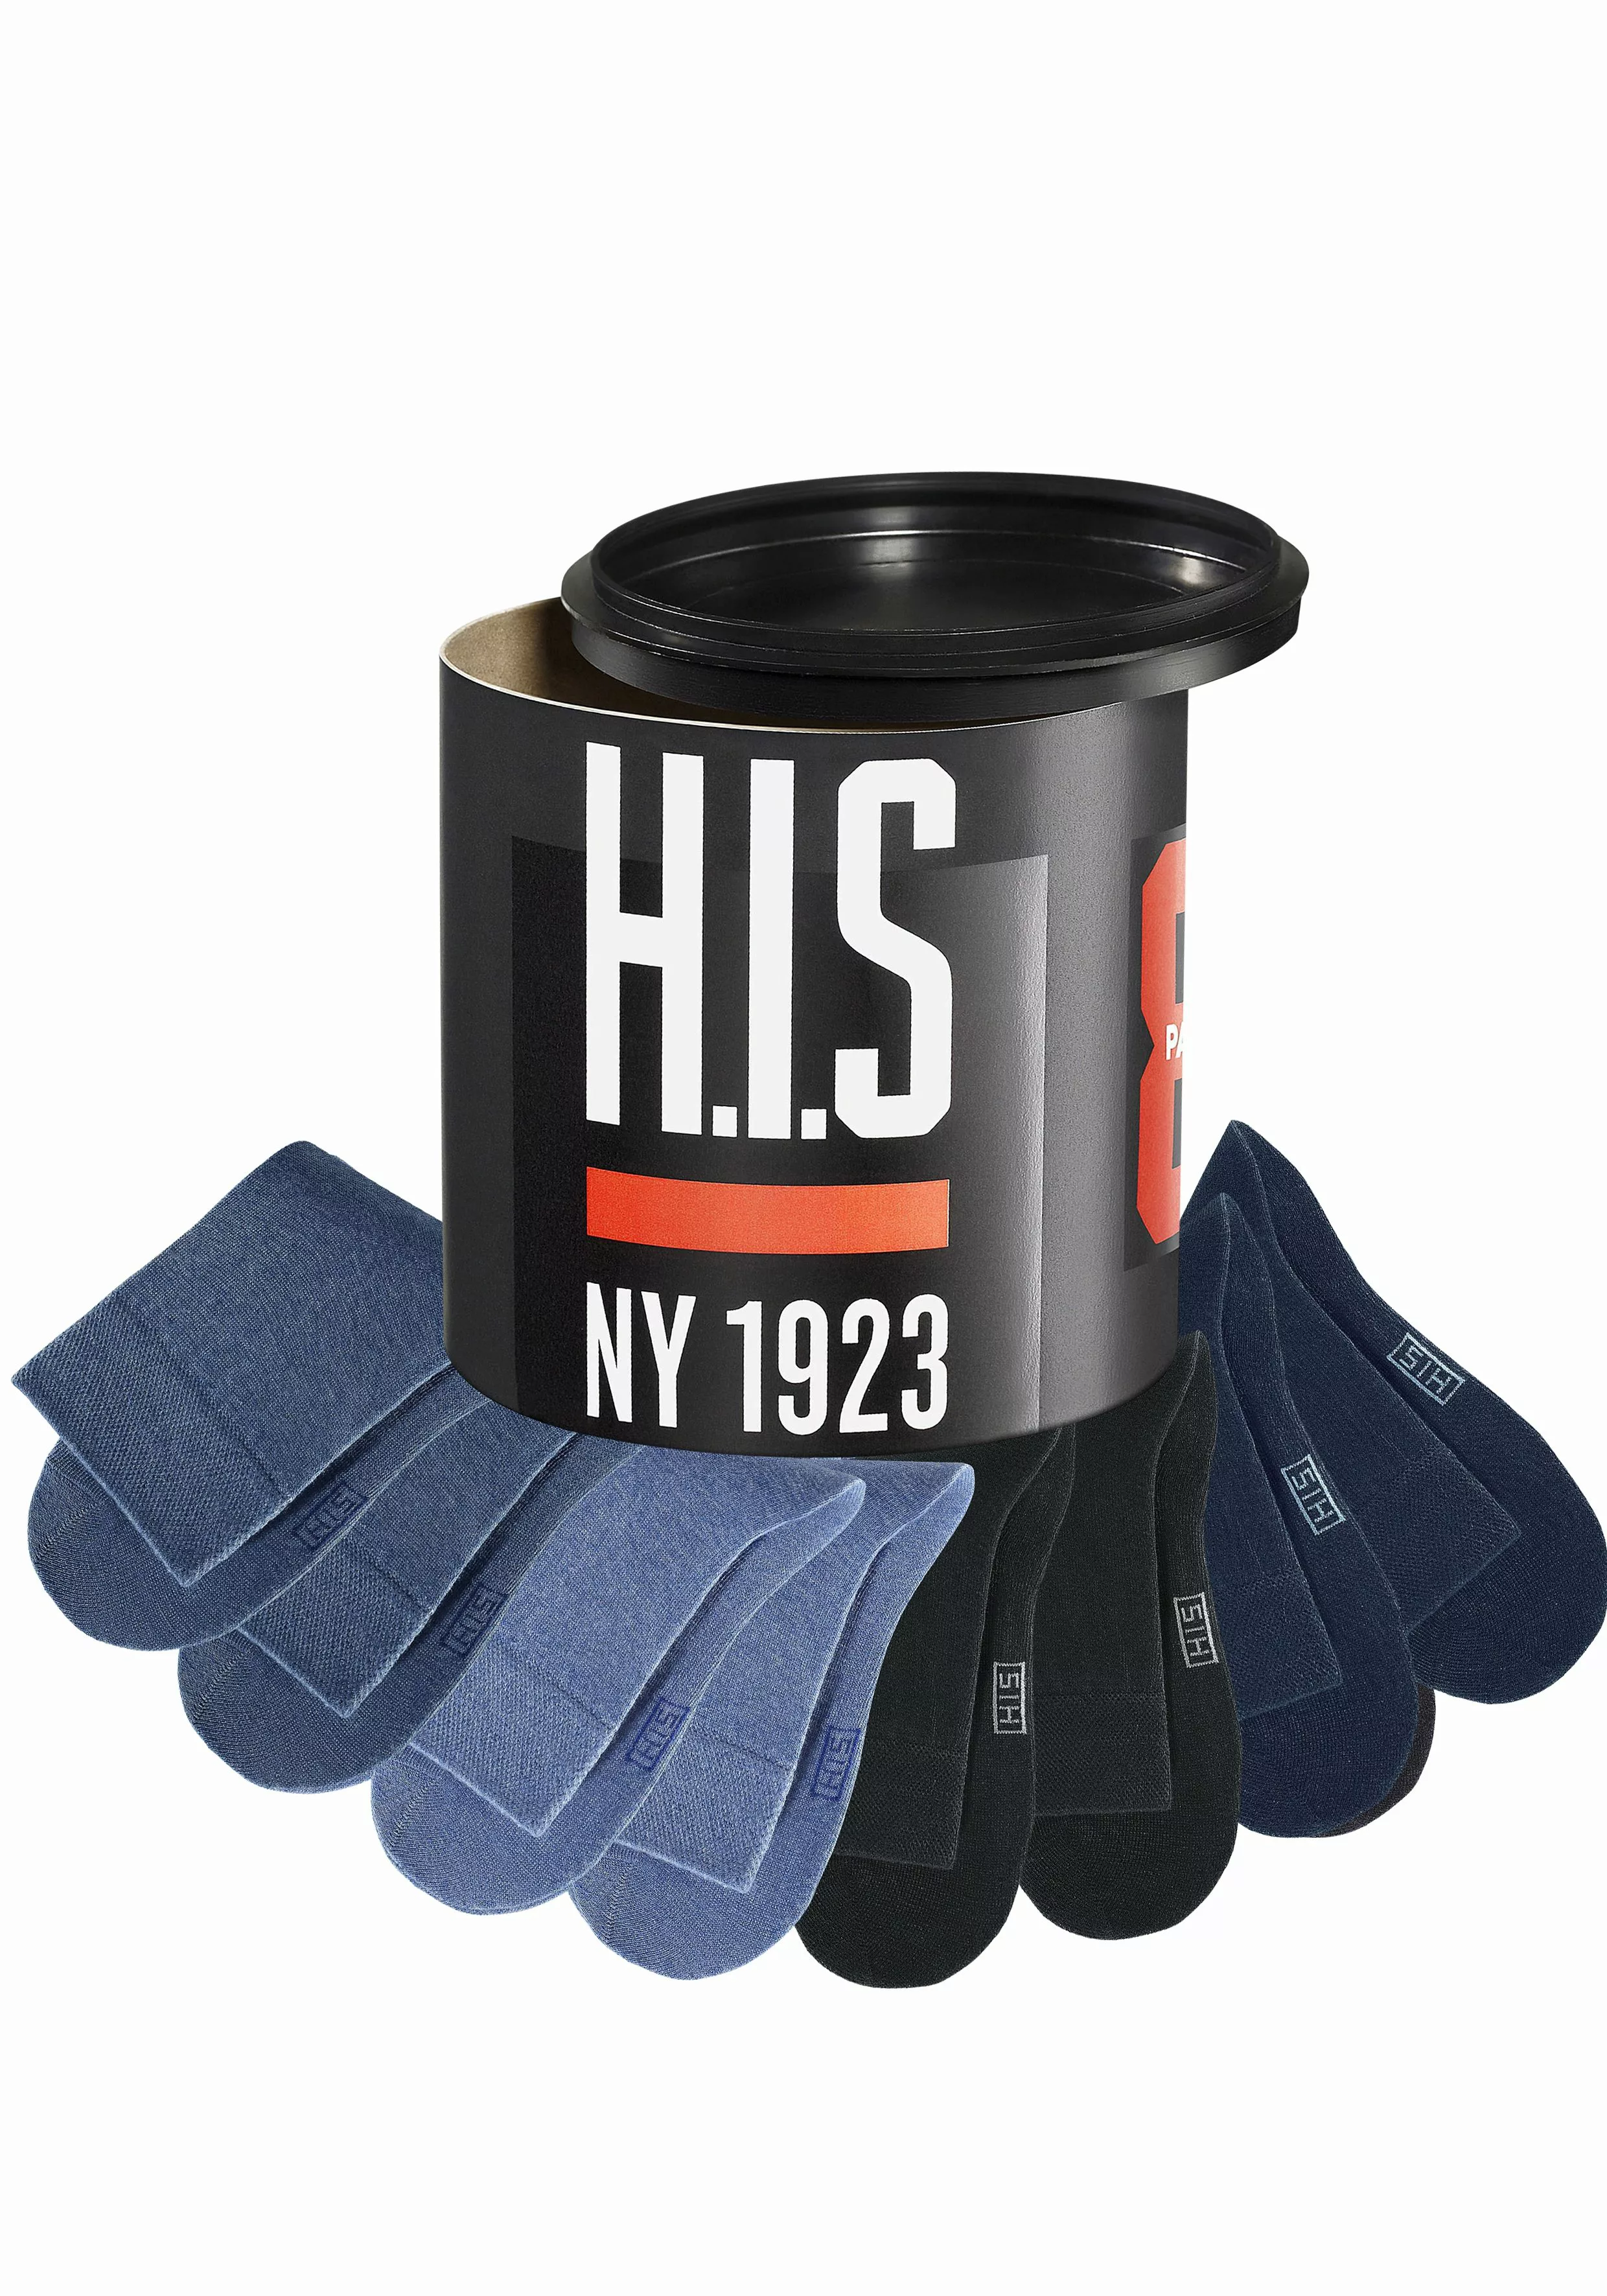 H.I.S Socken, (Dose, 8 Paar) günstig online kaufen